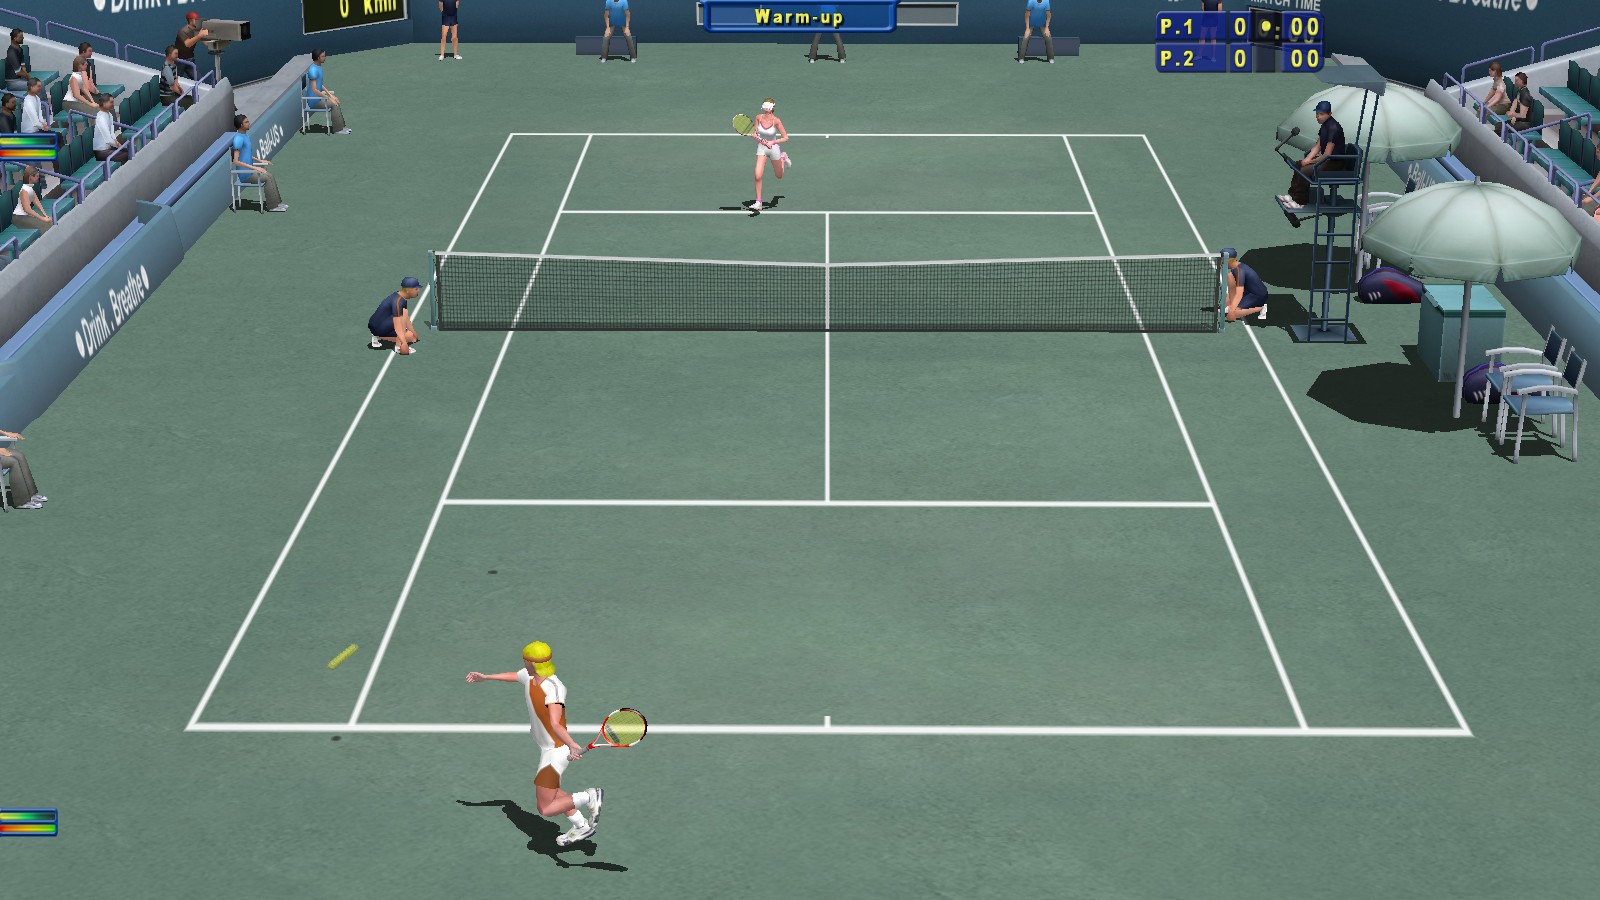 Tennis Elbow 2013 on Steam